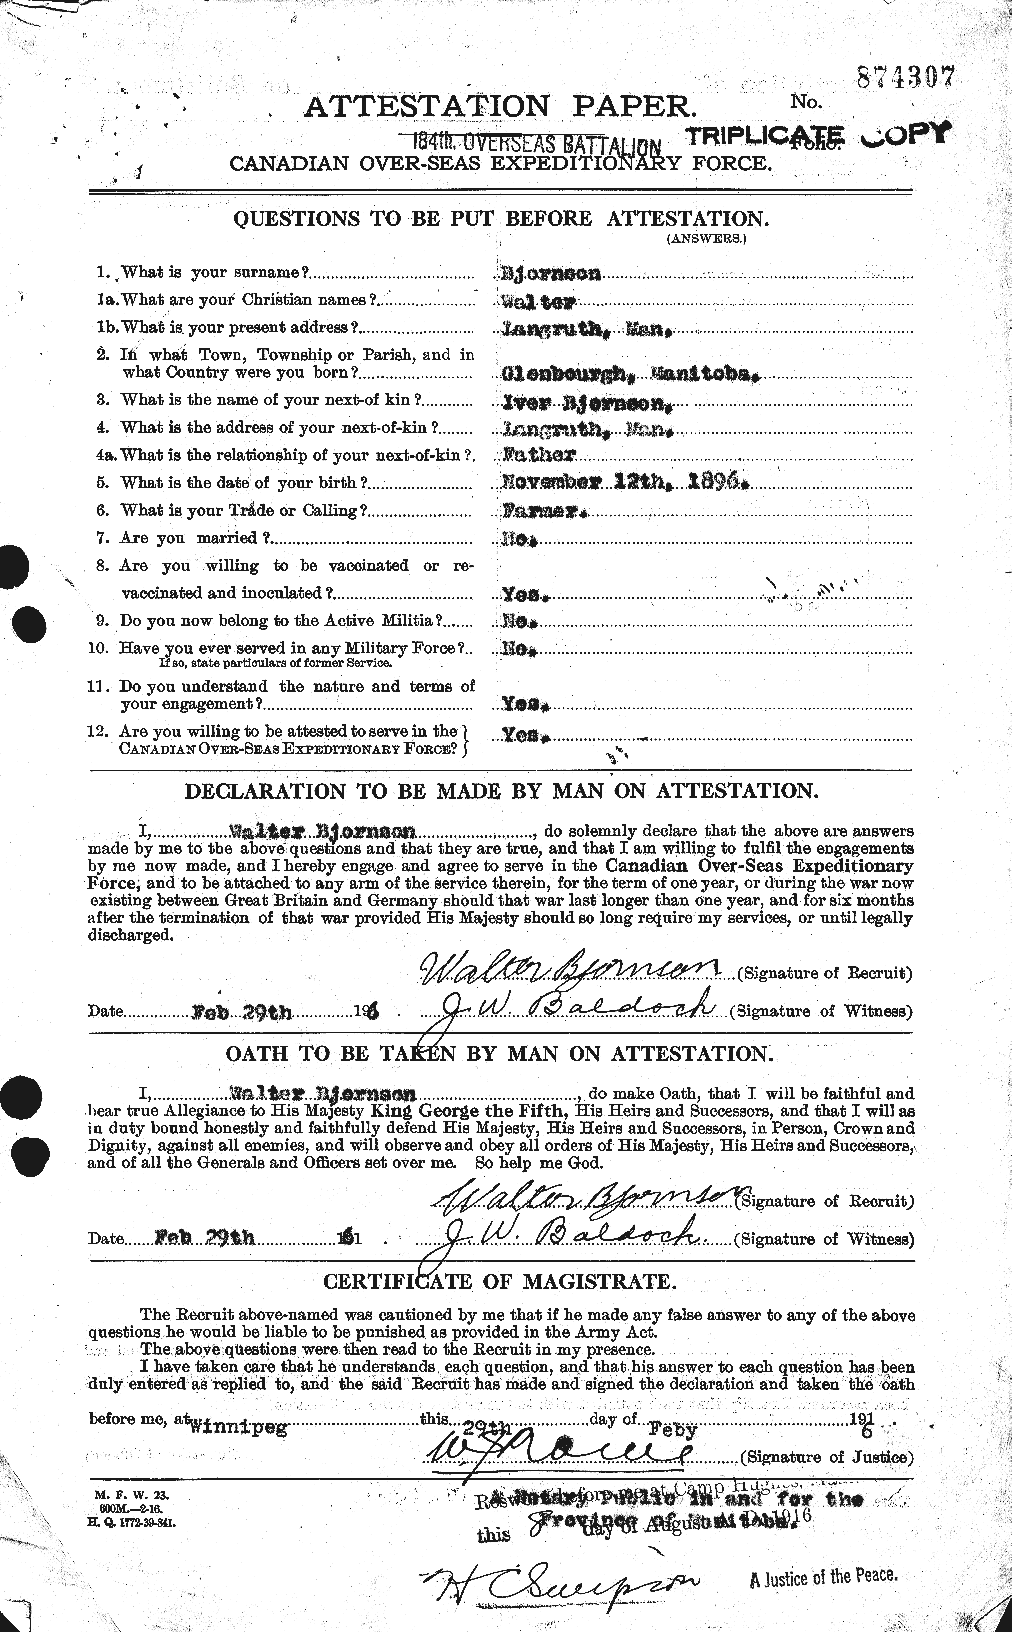 Dossiers du Personnel de la Première Guerre mondiale - CEC 241140a